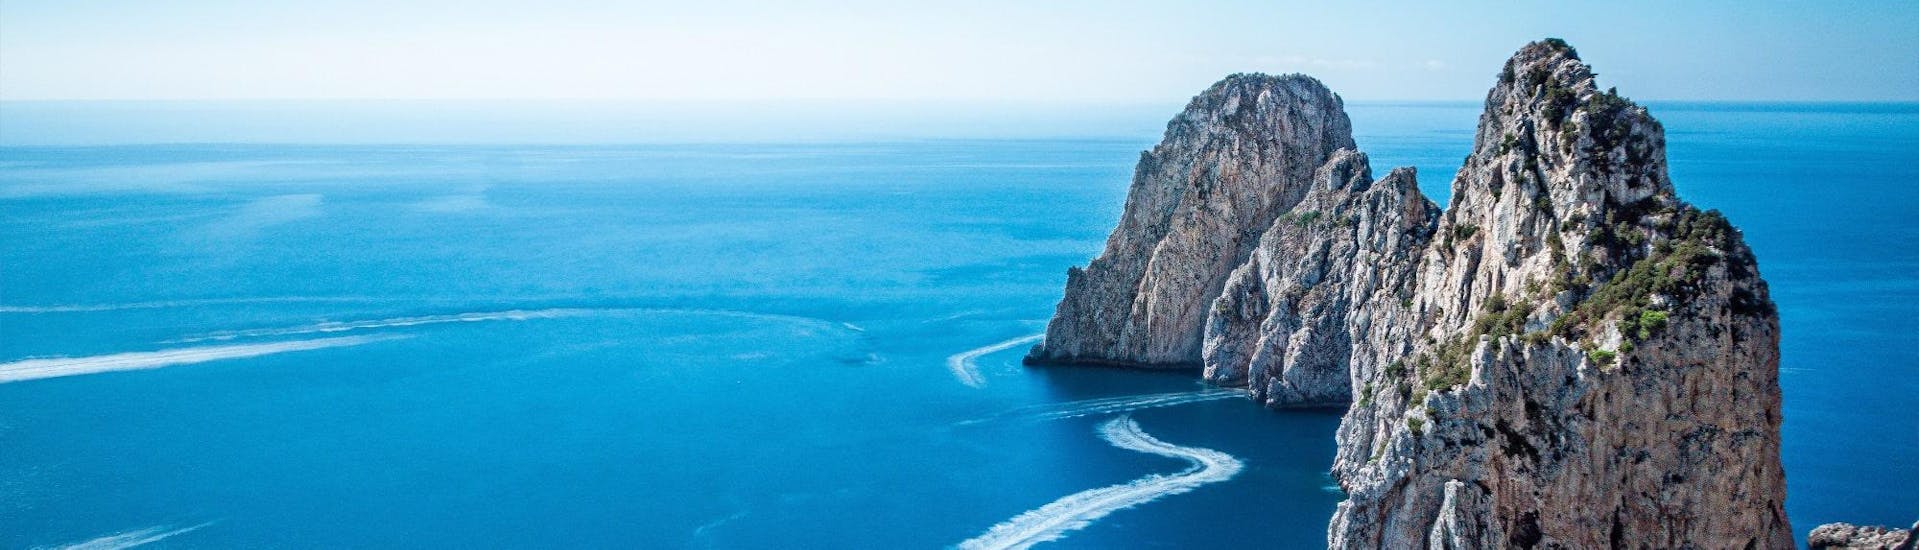 Superbe photo des Faraglioni que l'on peut admirer pendant l'excursion en bateau de Sorrento à Capri, y compris la Grotte bleue.